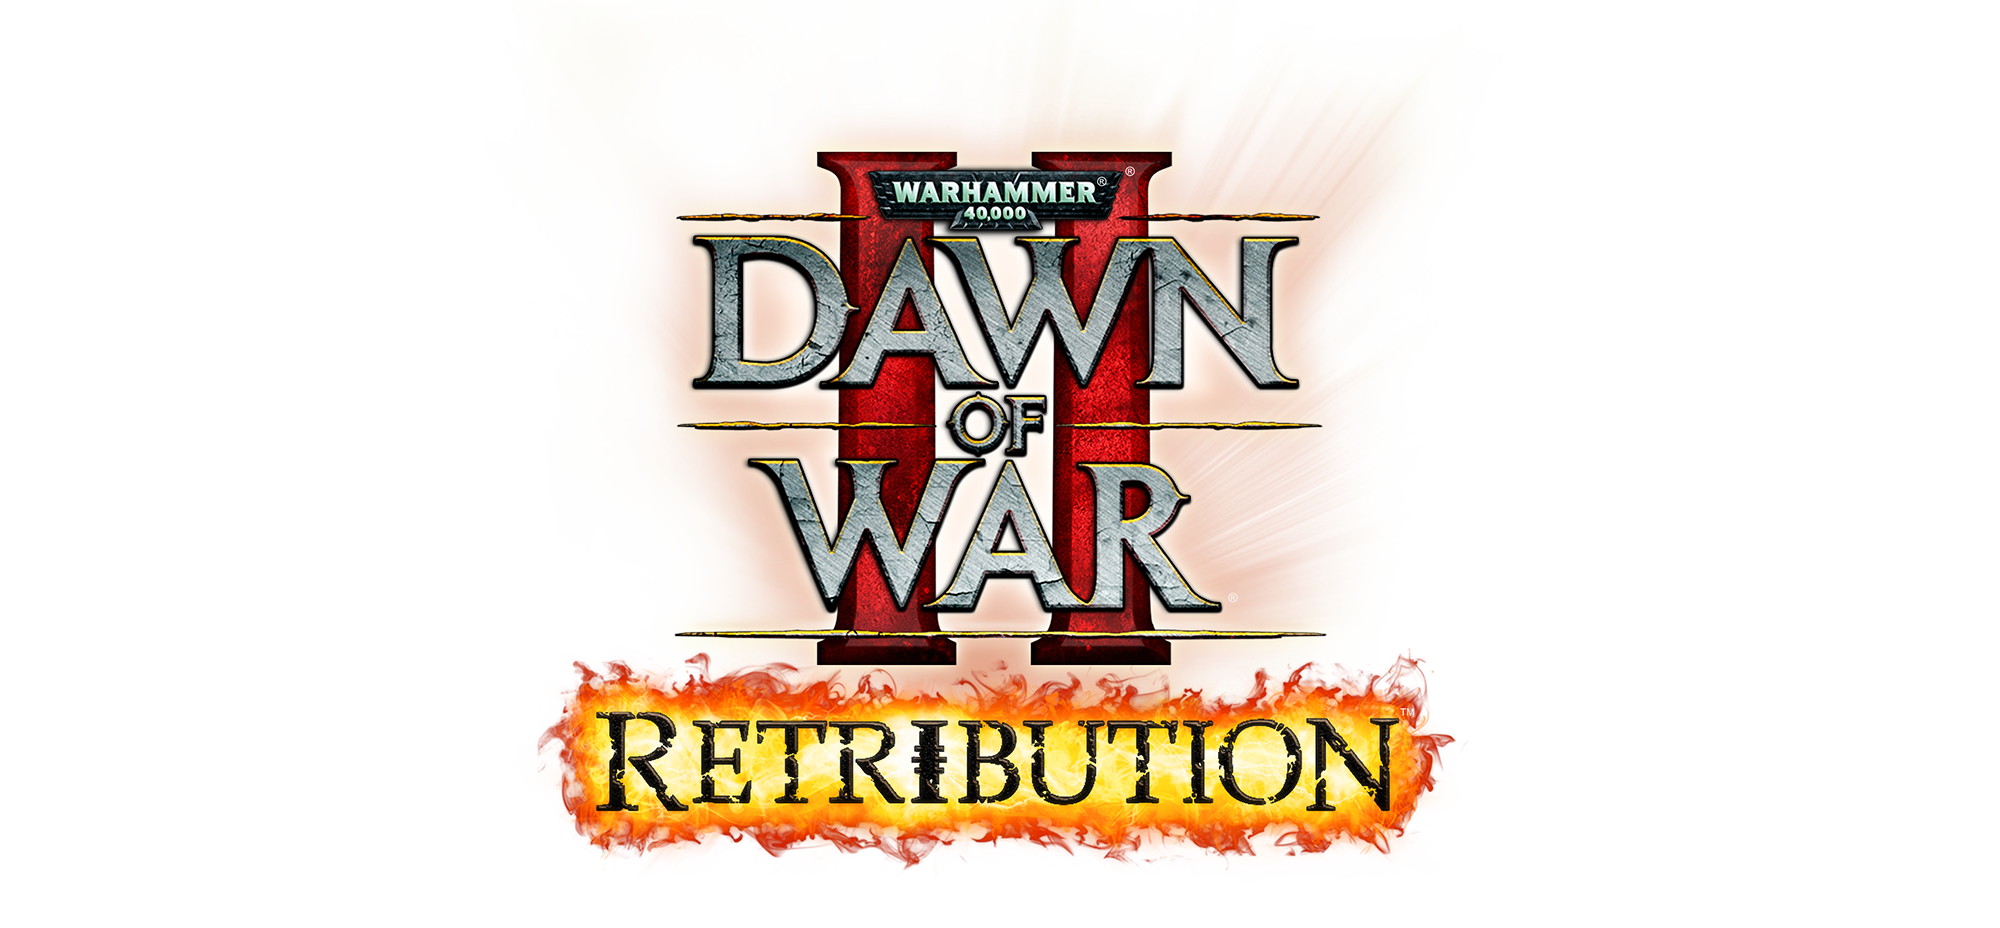 Warhammer 40,000: Dawn of War II - Retribution